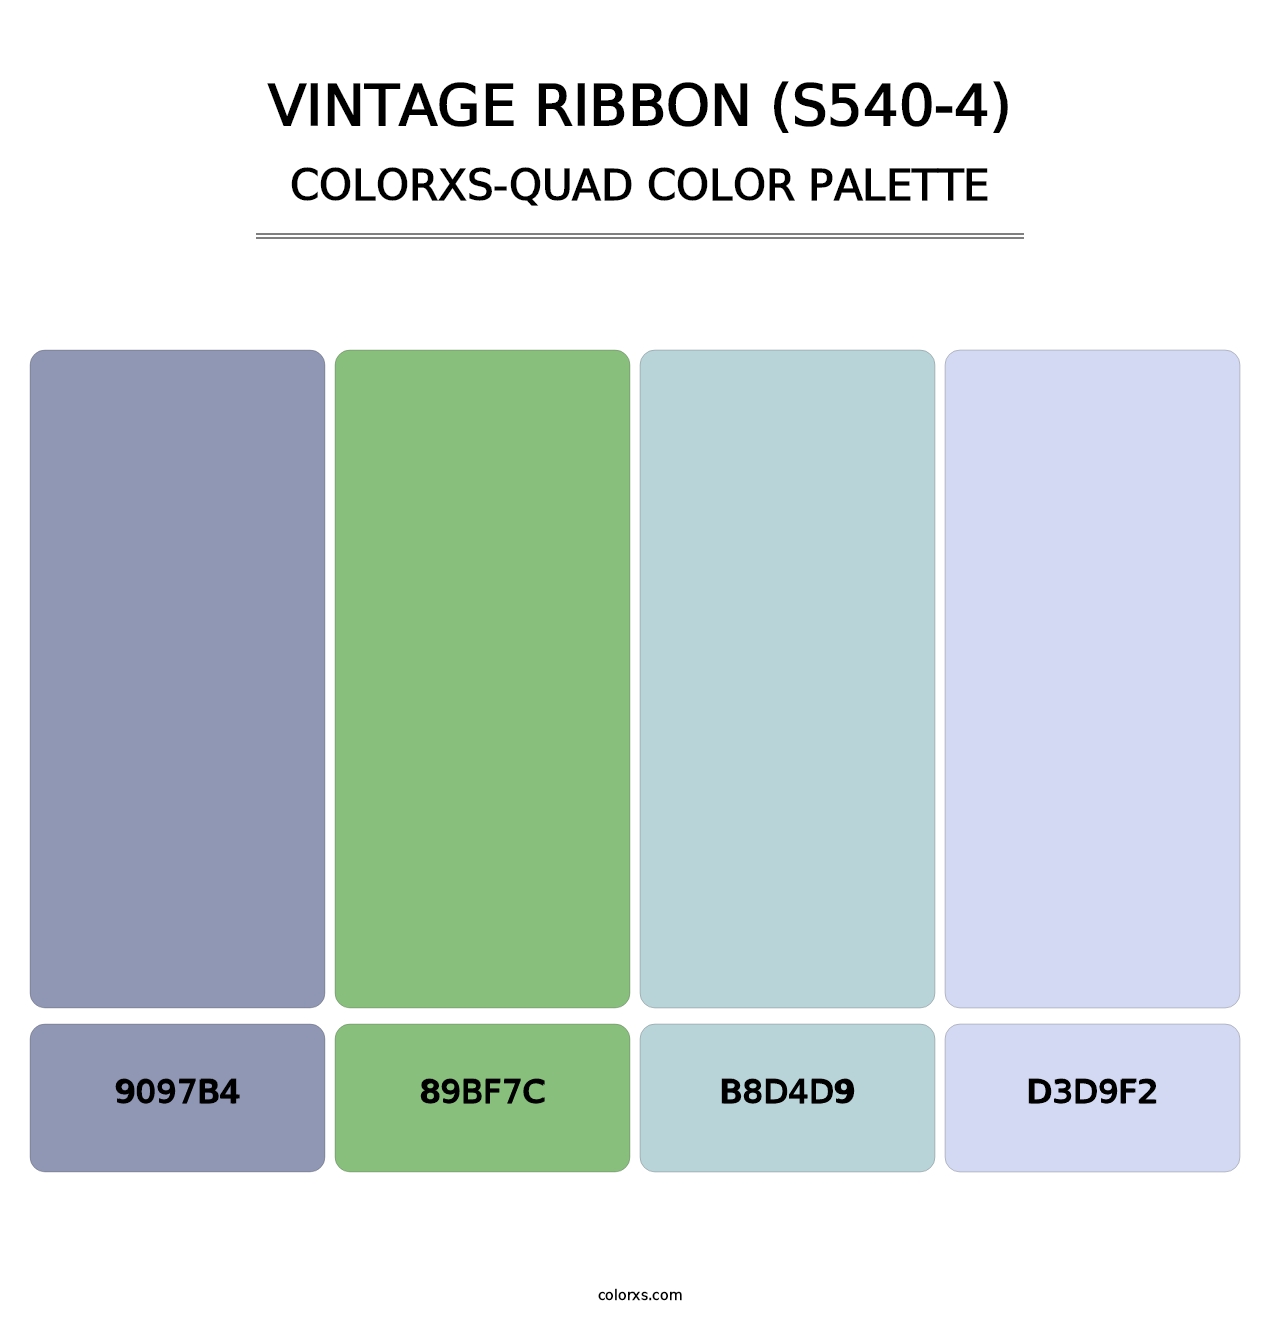 Vintage Ribbon (S540-4) - Colorxs Quad Palette